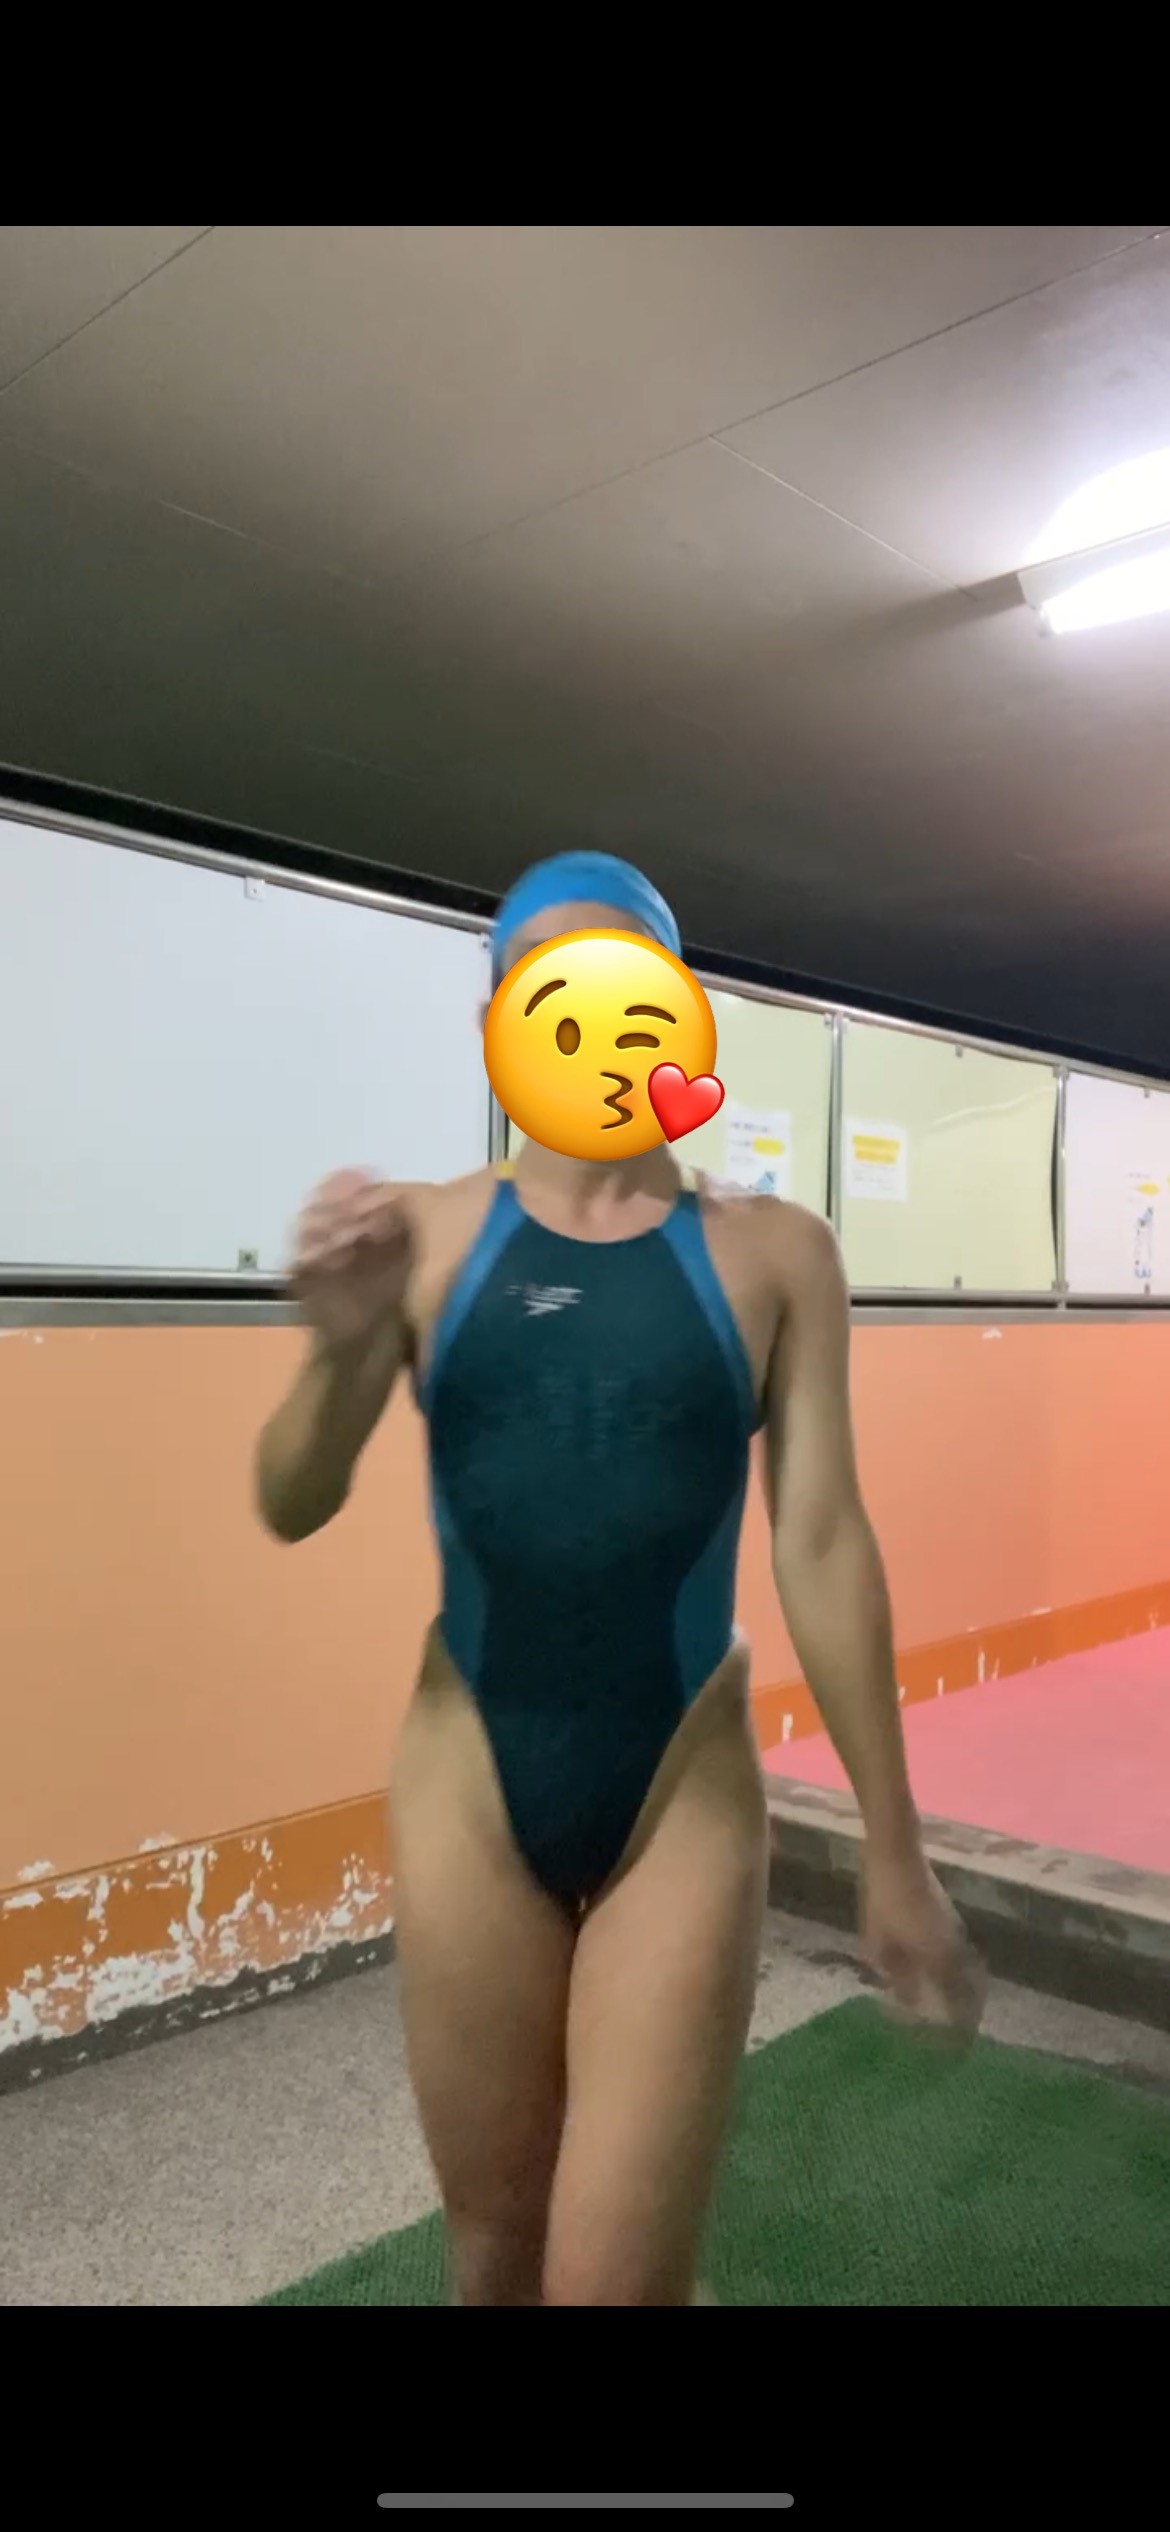 [男性] 女性用競泳水着画像掲示板へ投稿されたまりこ様の女性用競泳水着画像 No.17083517100001